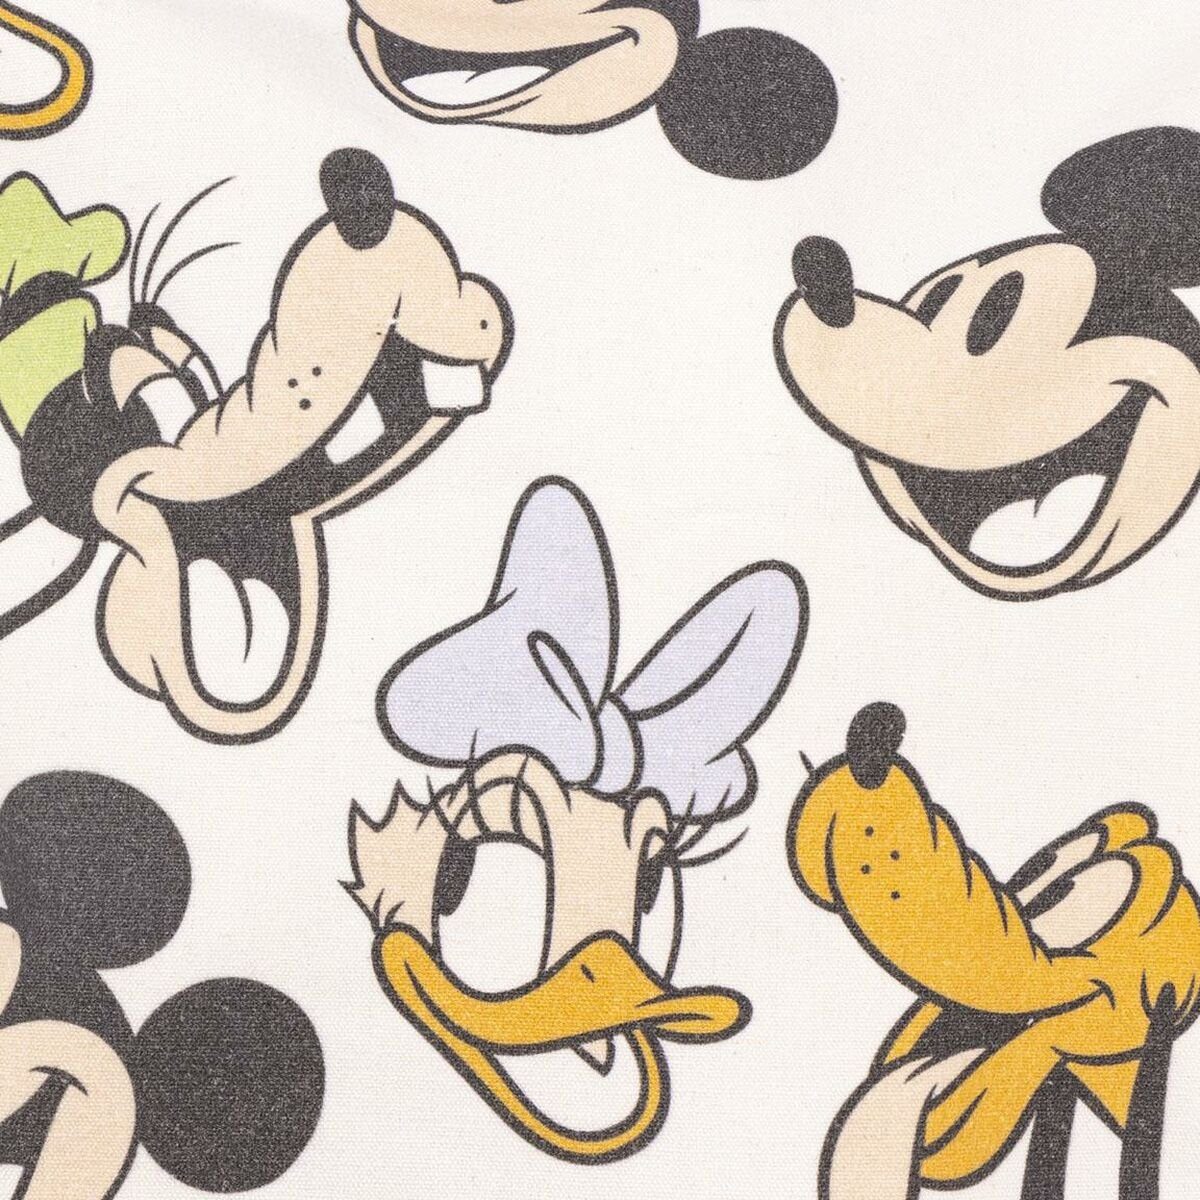 Disney Minnie Mouse 39 Minnie Einkaufstasche x Mouse cm 36 Handtasche x 0,4 Bunt